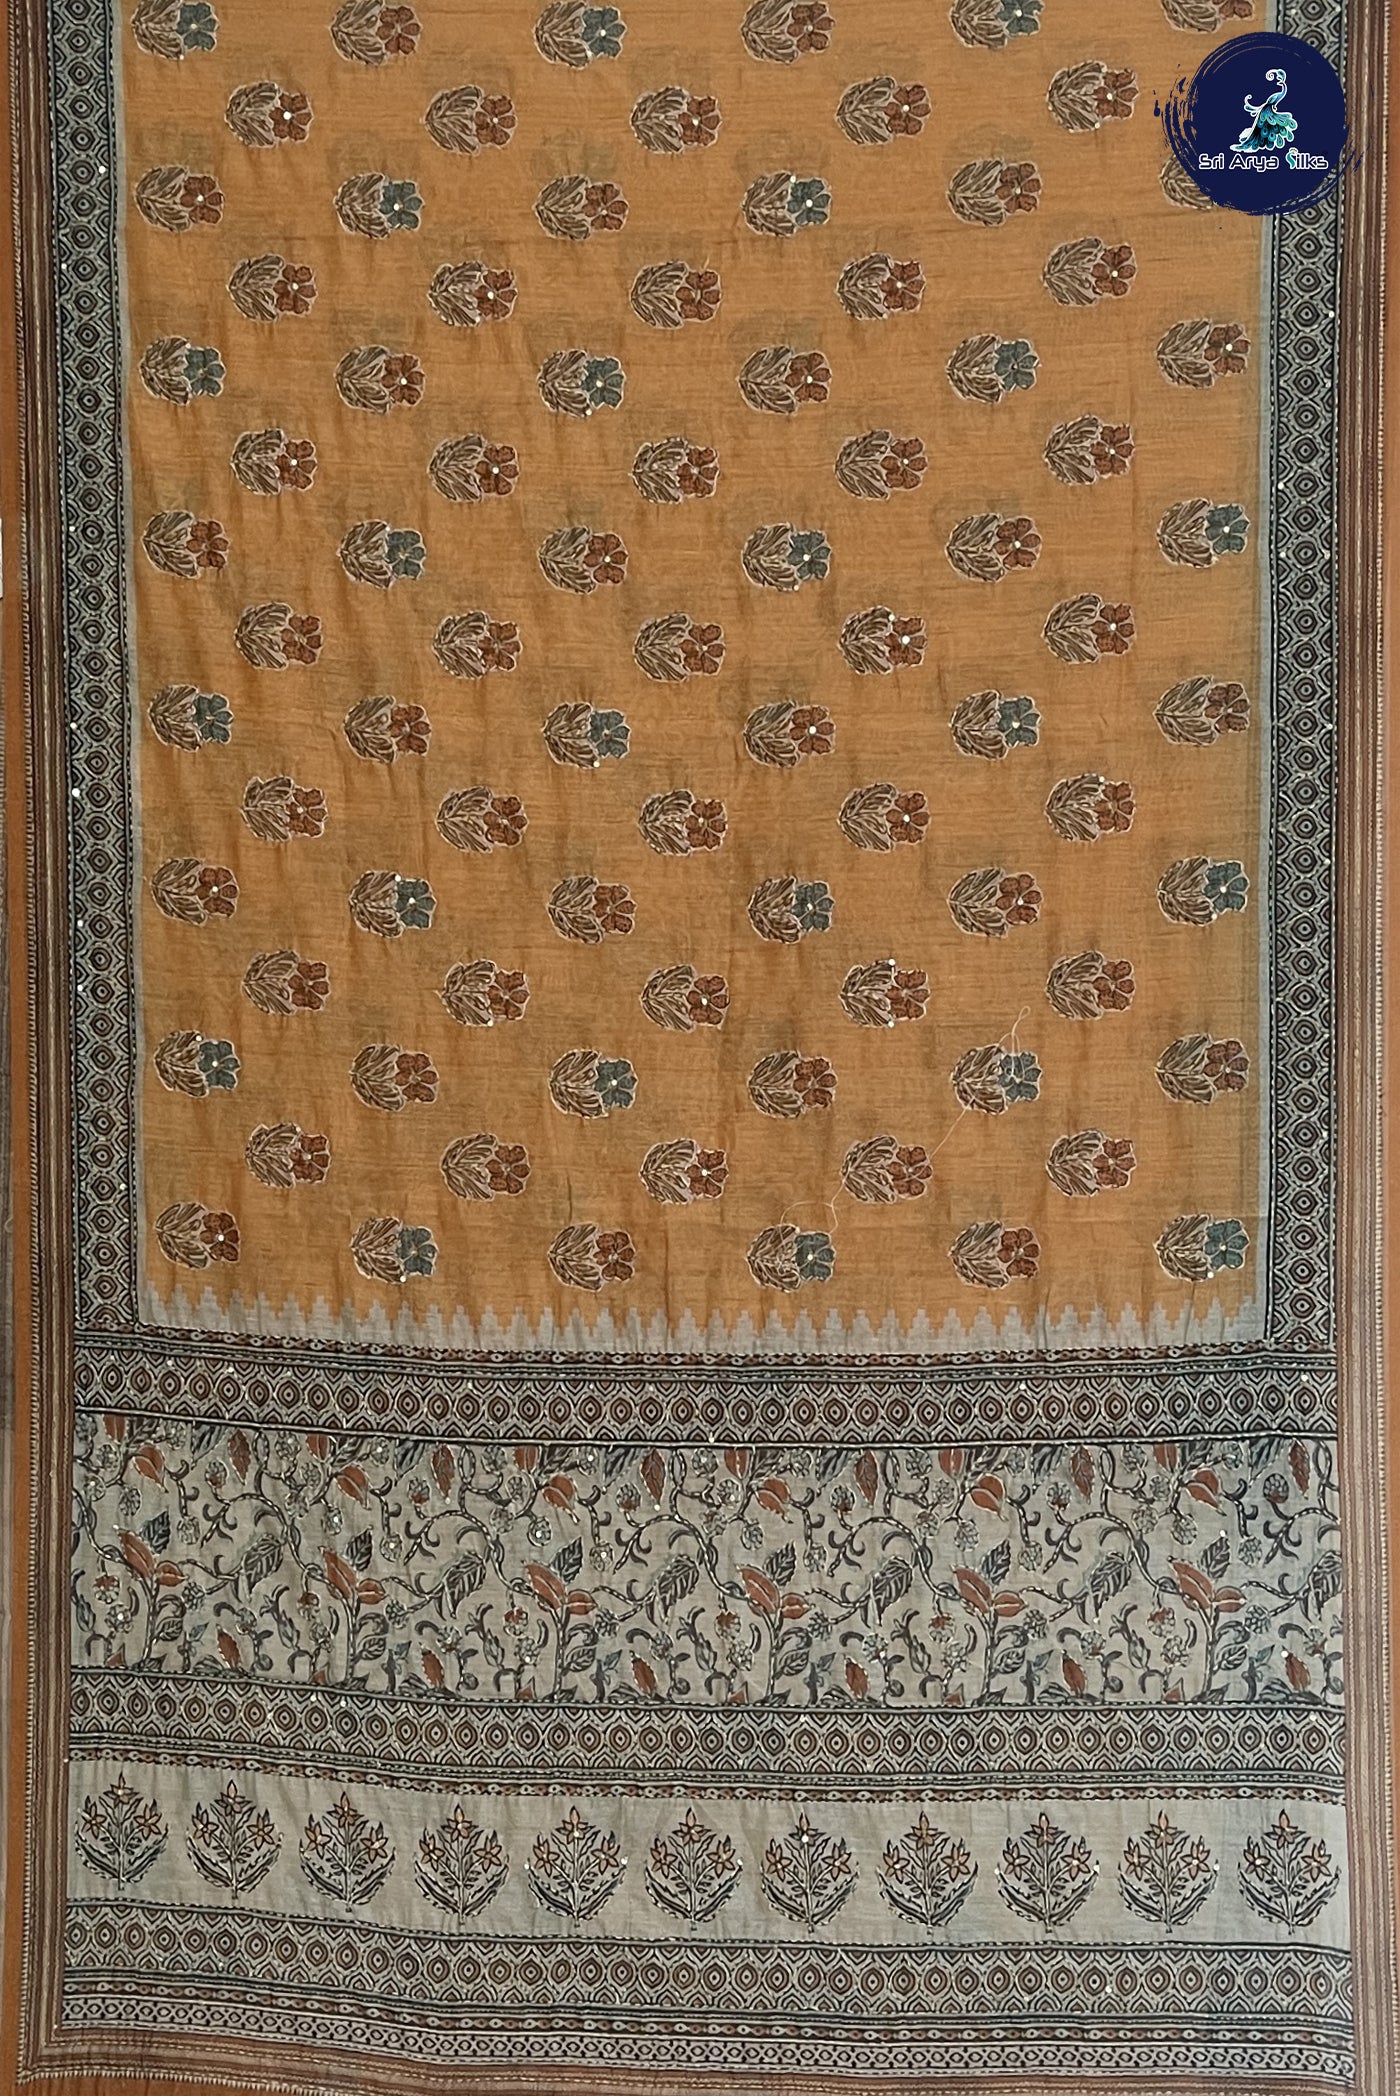 Light Orange Tussar Saree With Kantha Work Pattern